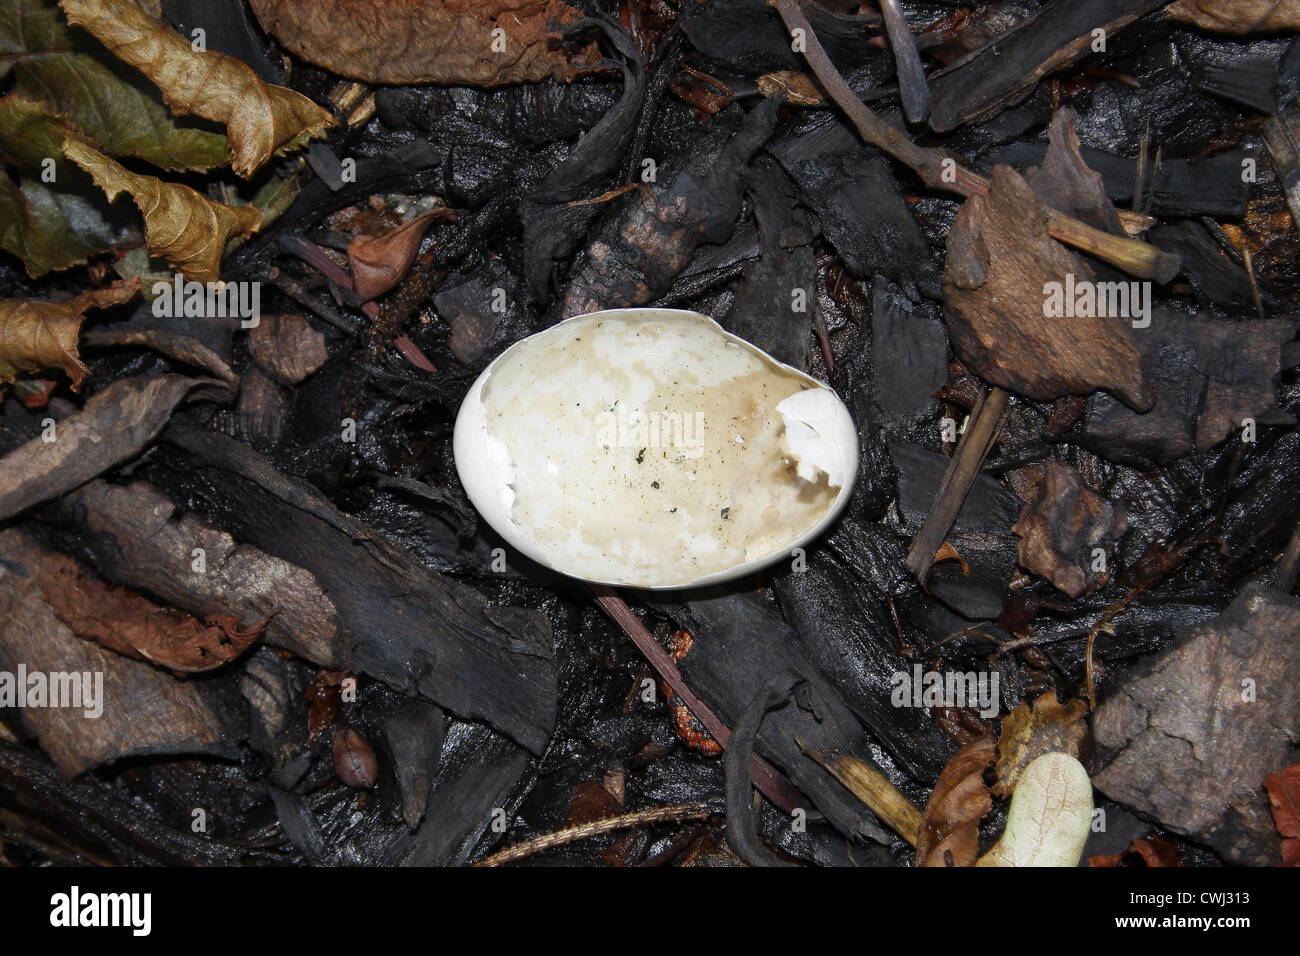 broken egg shell on wood chips Kings Park,Retford, Nottinghamshire, England, UK Stock Photo